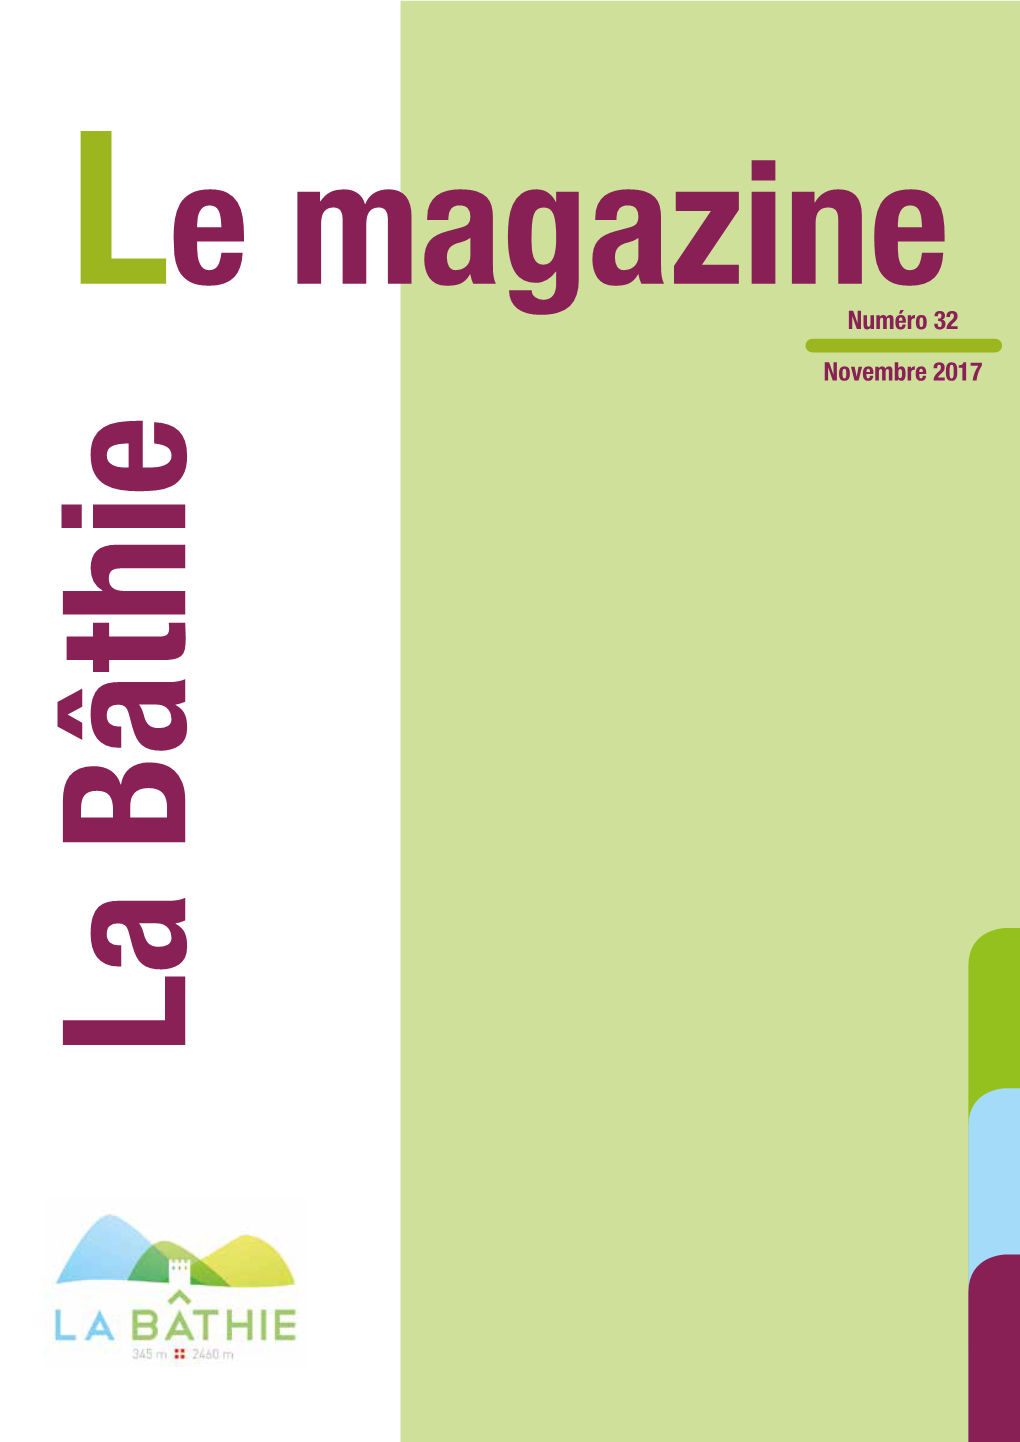 La Bâthie Le Magazine La Bâthie / Numéro 32 / Octobre 2017